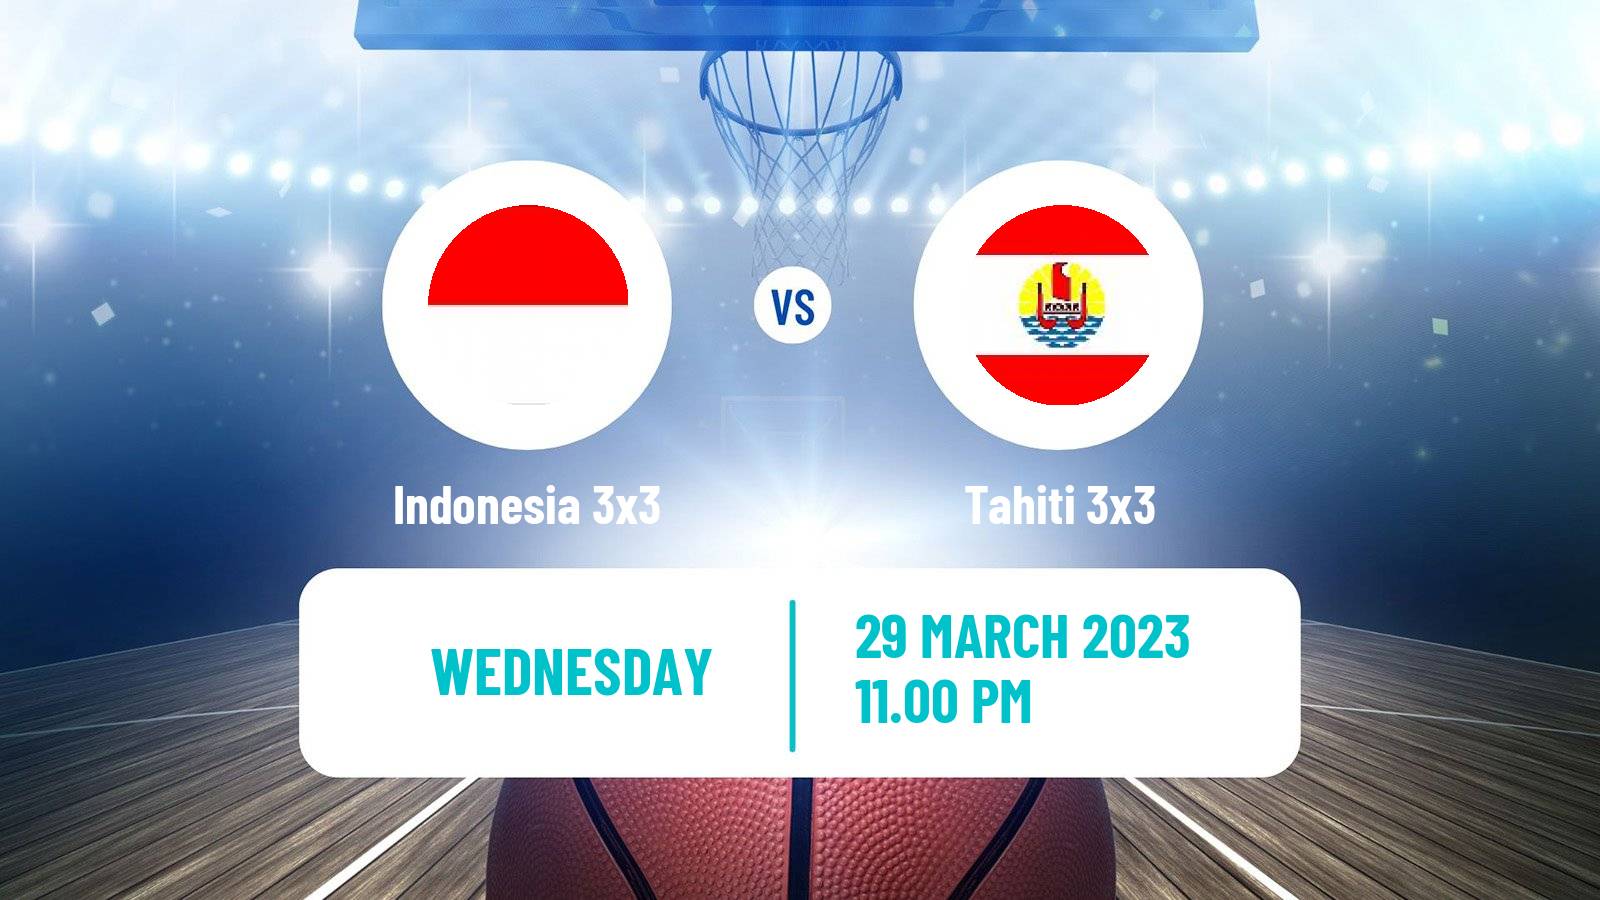 Basketball Asia Cup 3x3 Indonesia 3x3 - Tahiti 3x3